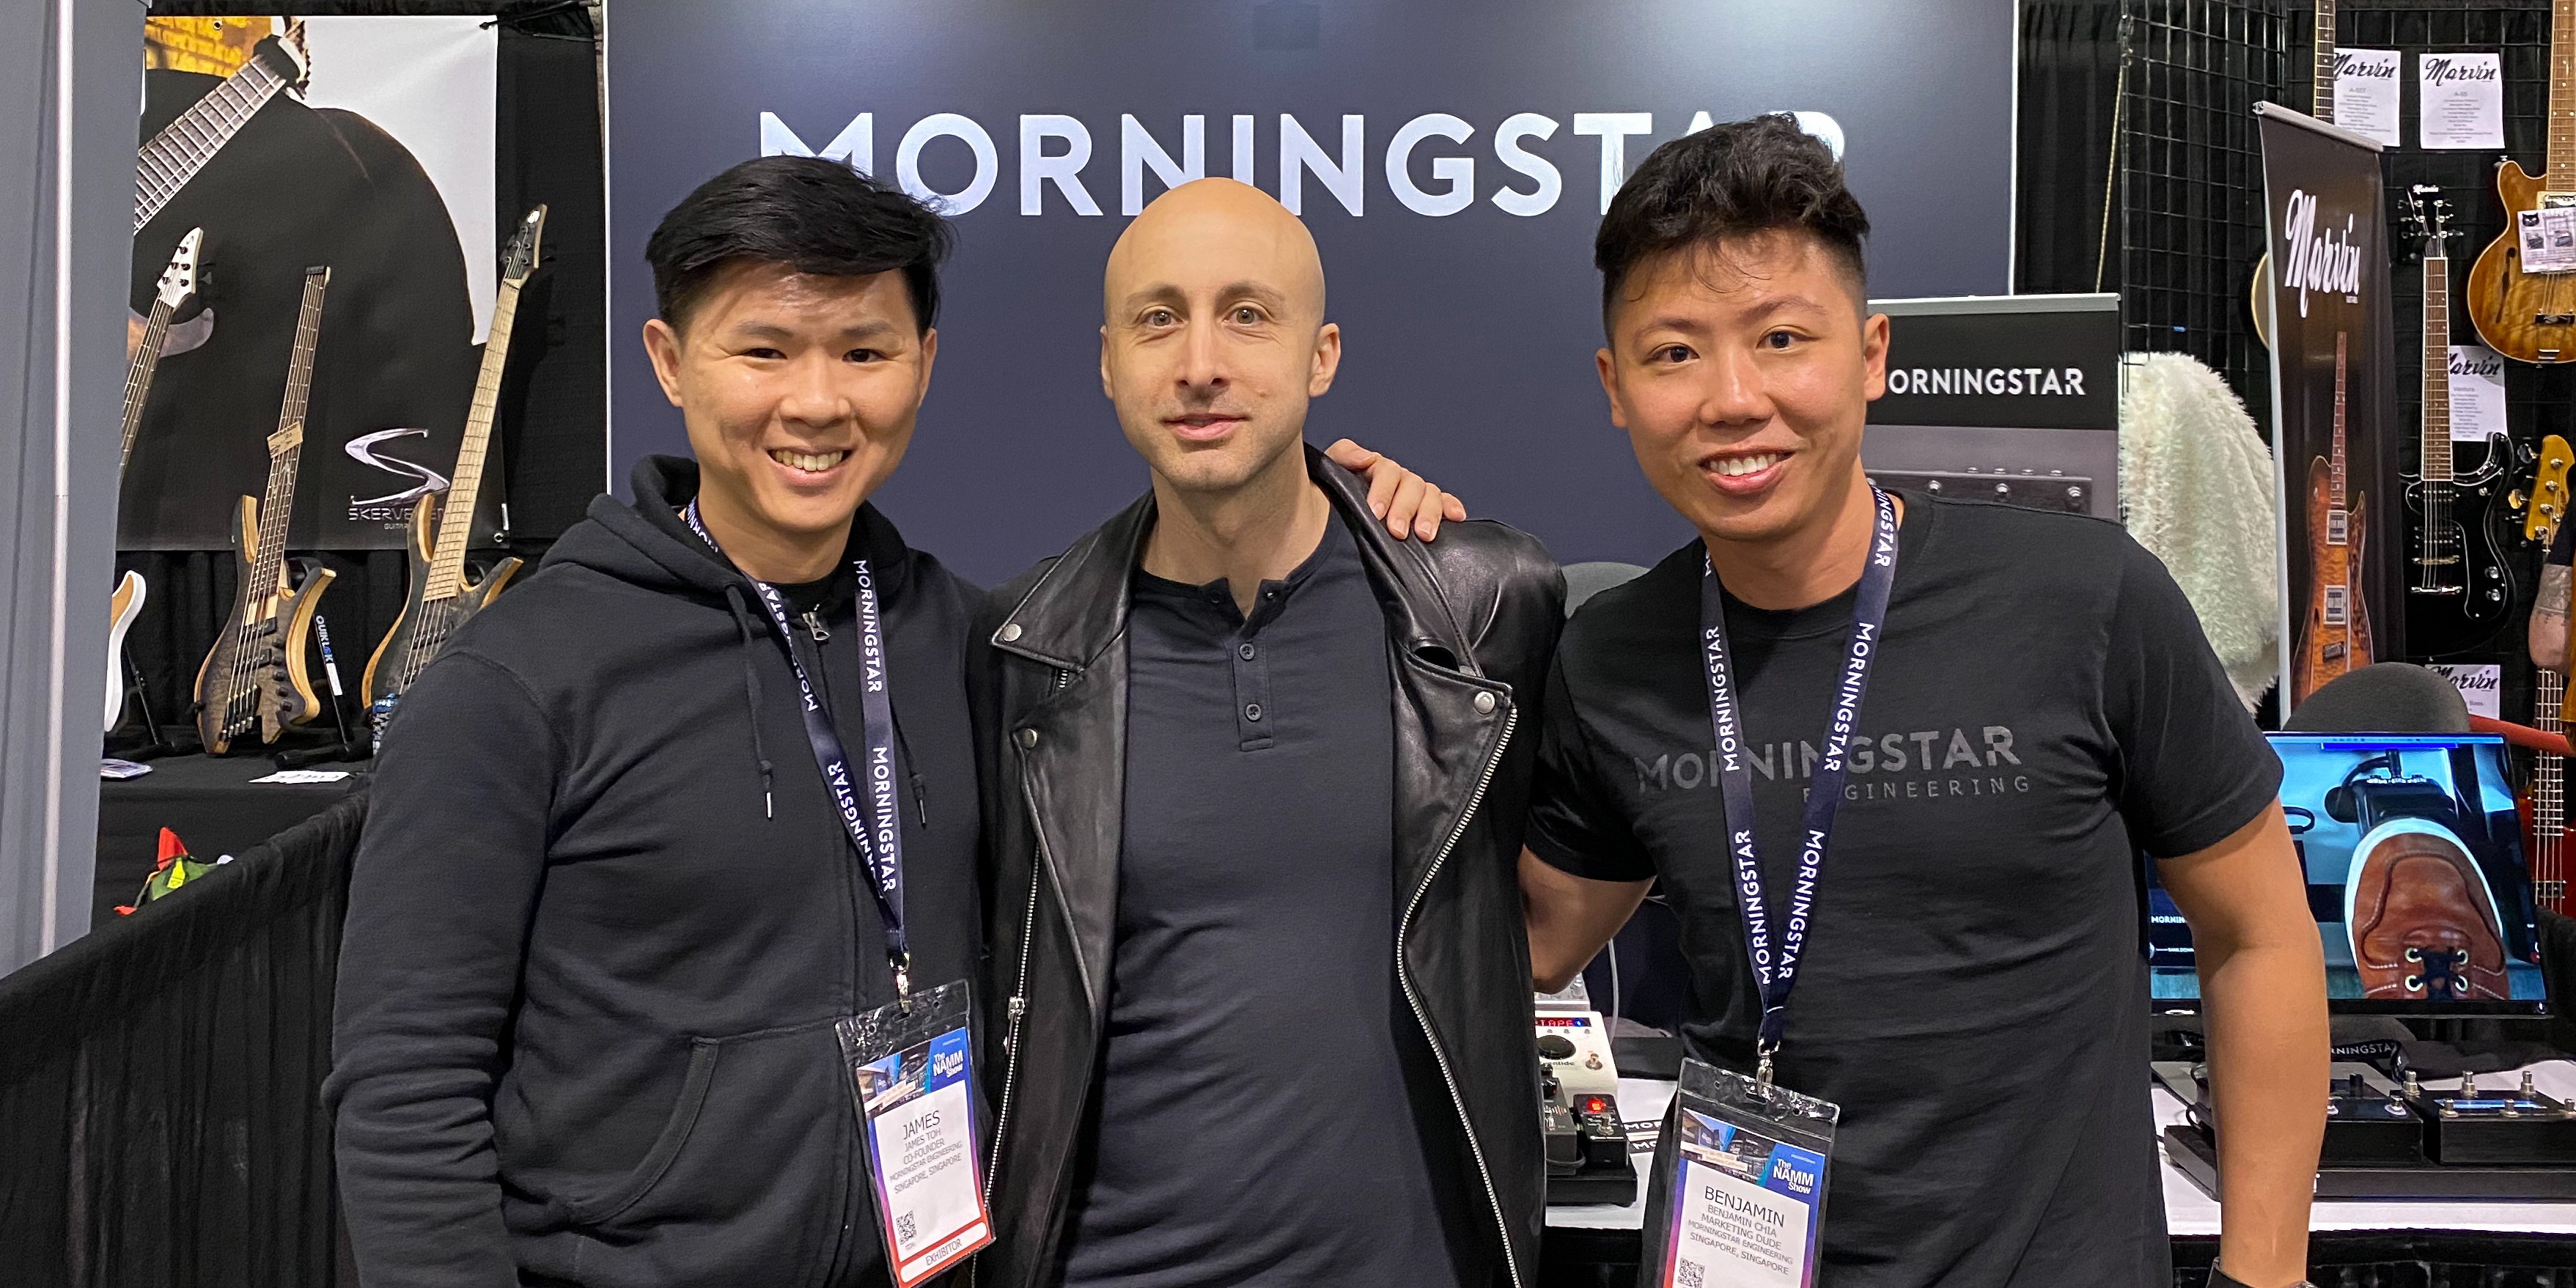 與Ellie Goulding和Simple Plan共享舞台-新加坡MIDI控制器製造商Morningstar Engineering分享他們的旅程